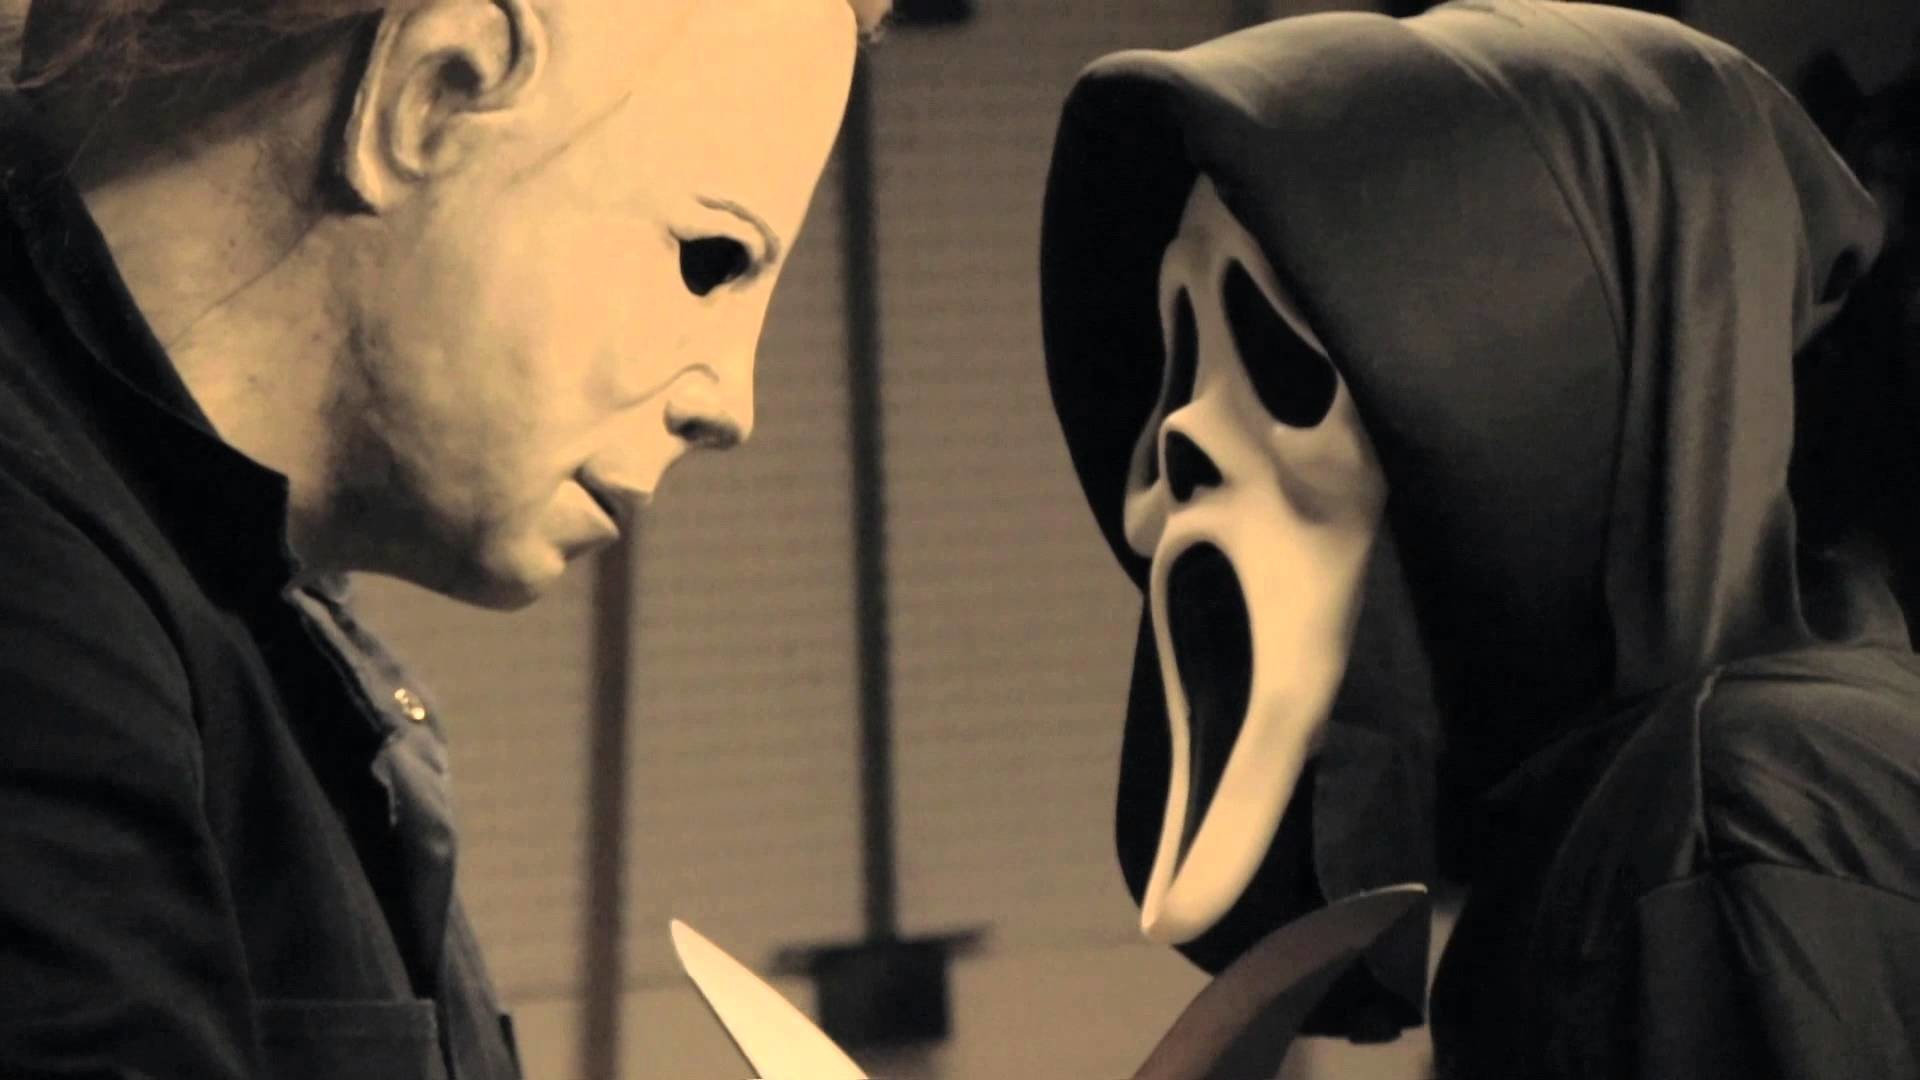 1920x1080 Michael Myers vs Ghostface OFFICIAL TRAILER (2013) | Horror Fan Film |  Halloween Scream - YouTube